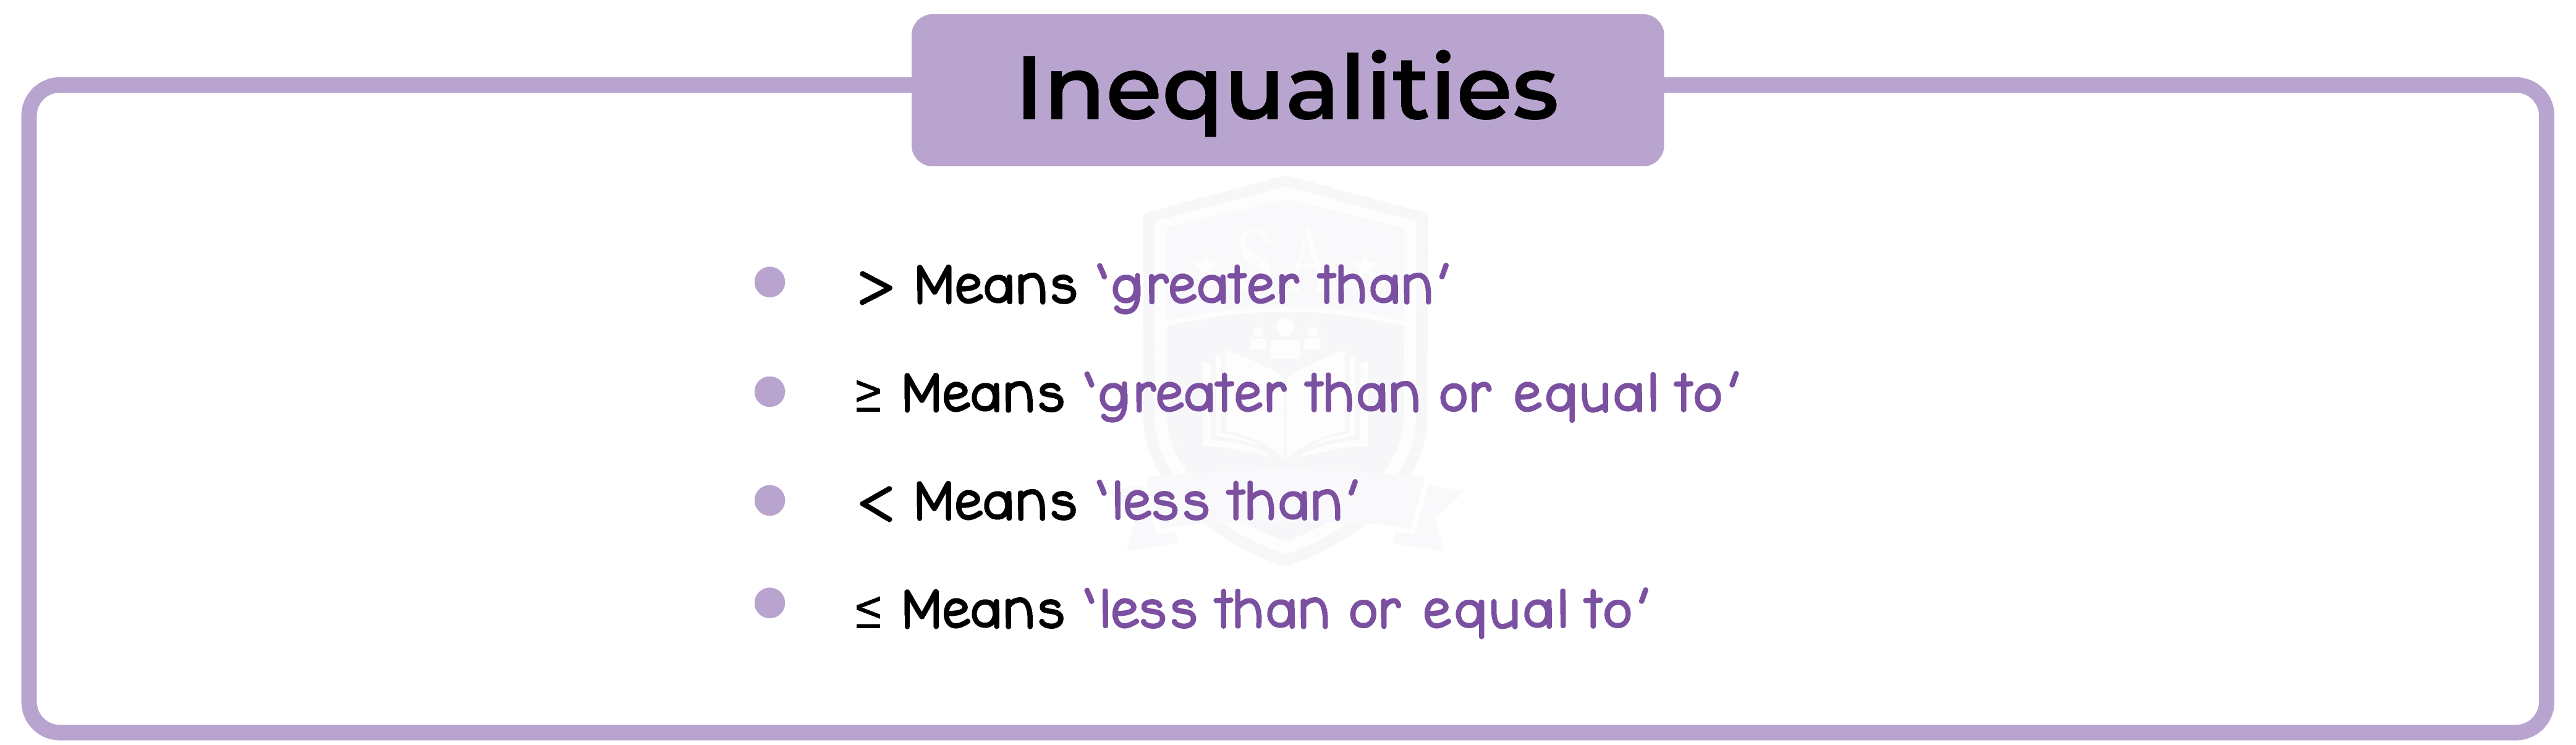 edexcel_igcse_mathematics a_topic 19_inequalities_003_Inequalities